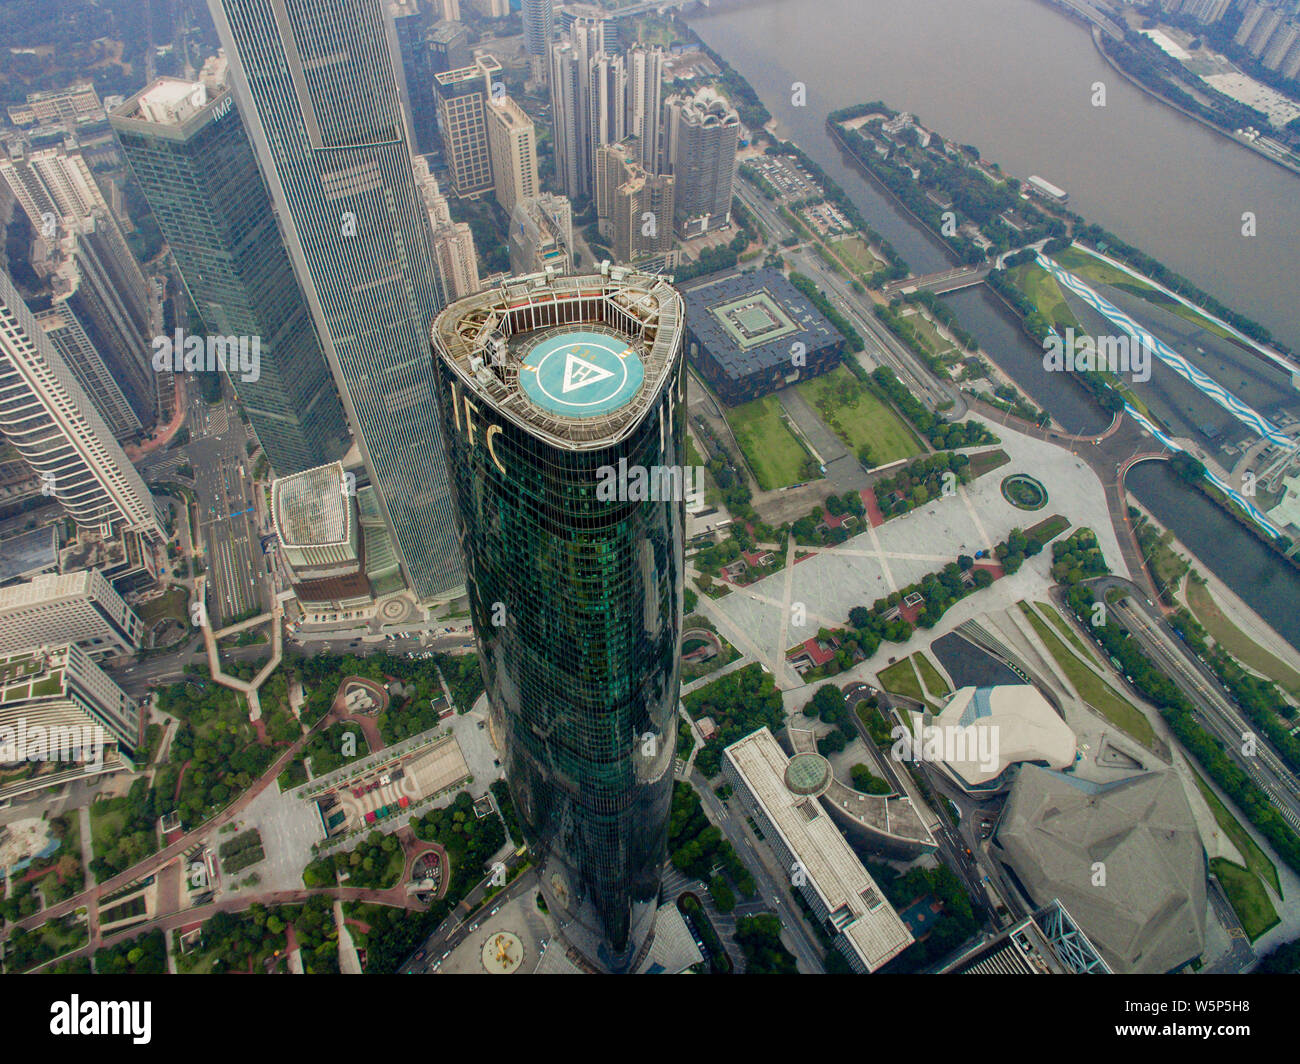 ---- Eine Luftaufnahme der Guangzhou International Finance Center (IFC) und anderen Wolkenkratzer und Hochhäuser der Zhujiang New Town (Pea Stockfoto